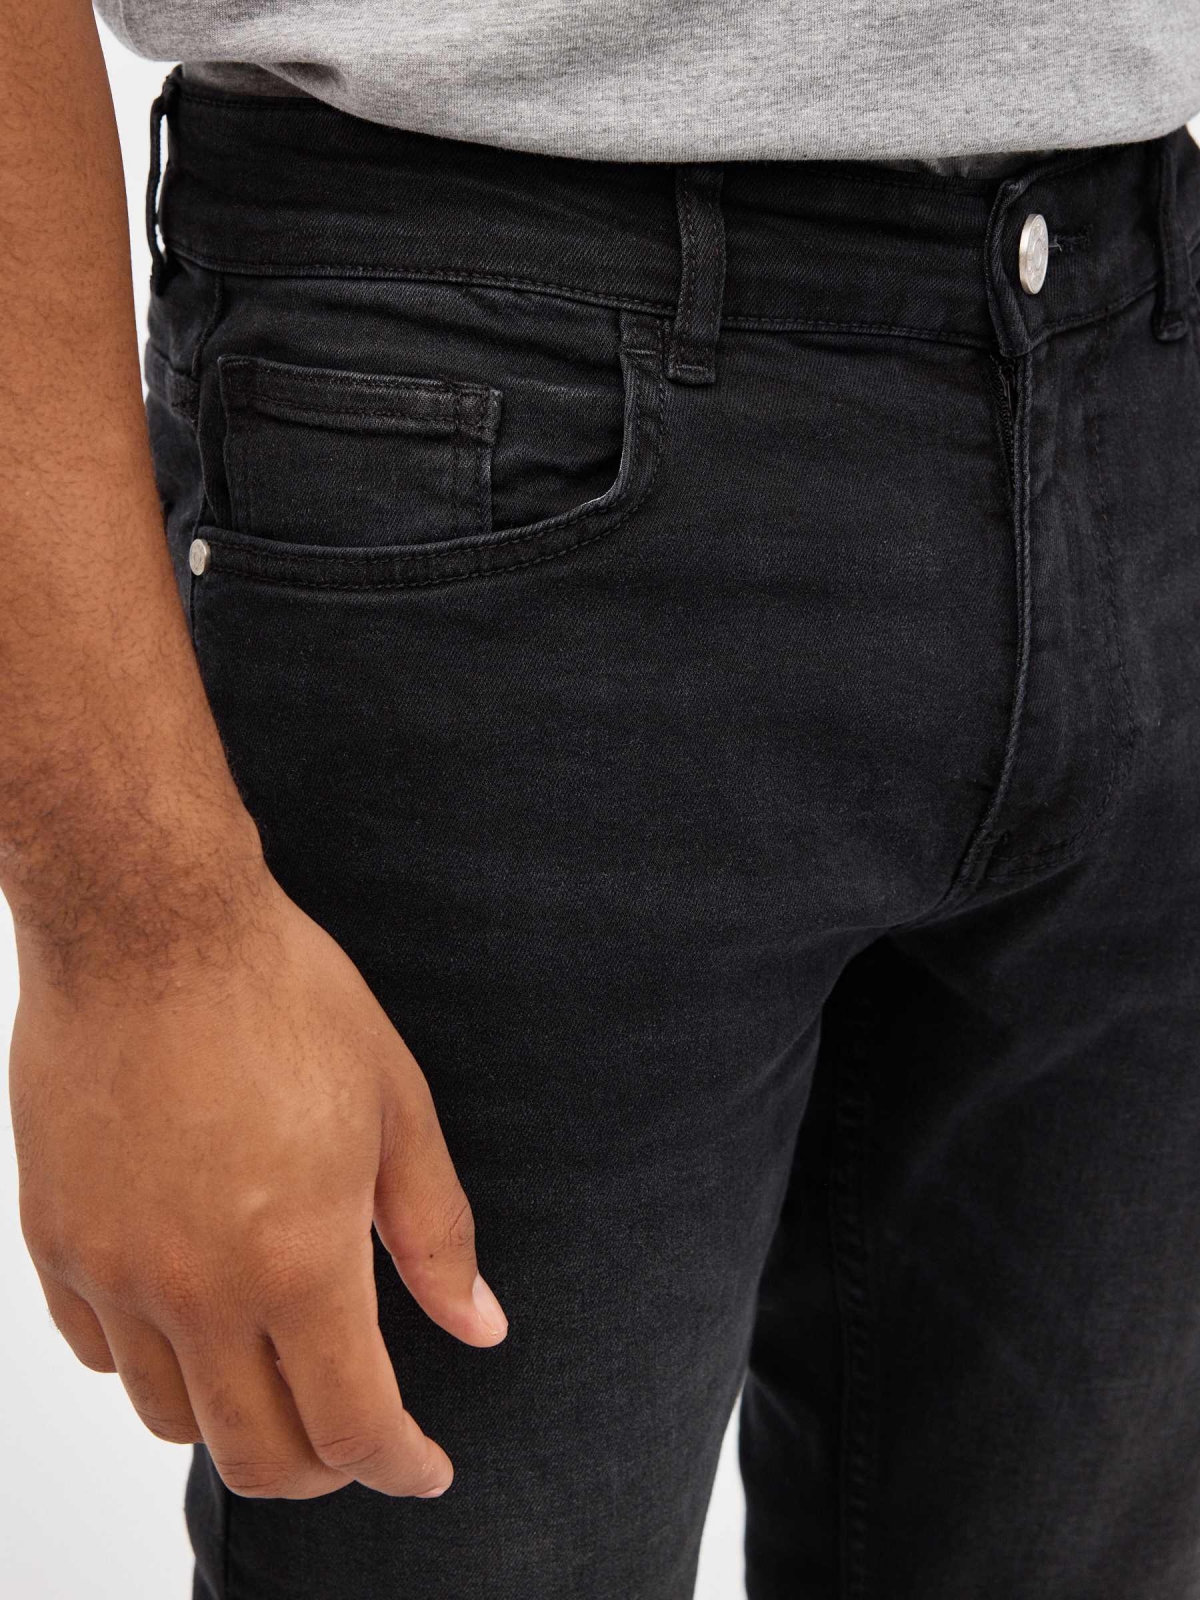 Jeans rasgadas normais preto vista detalhe